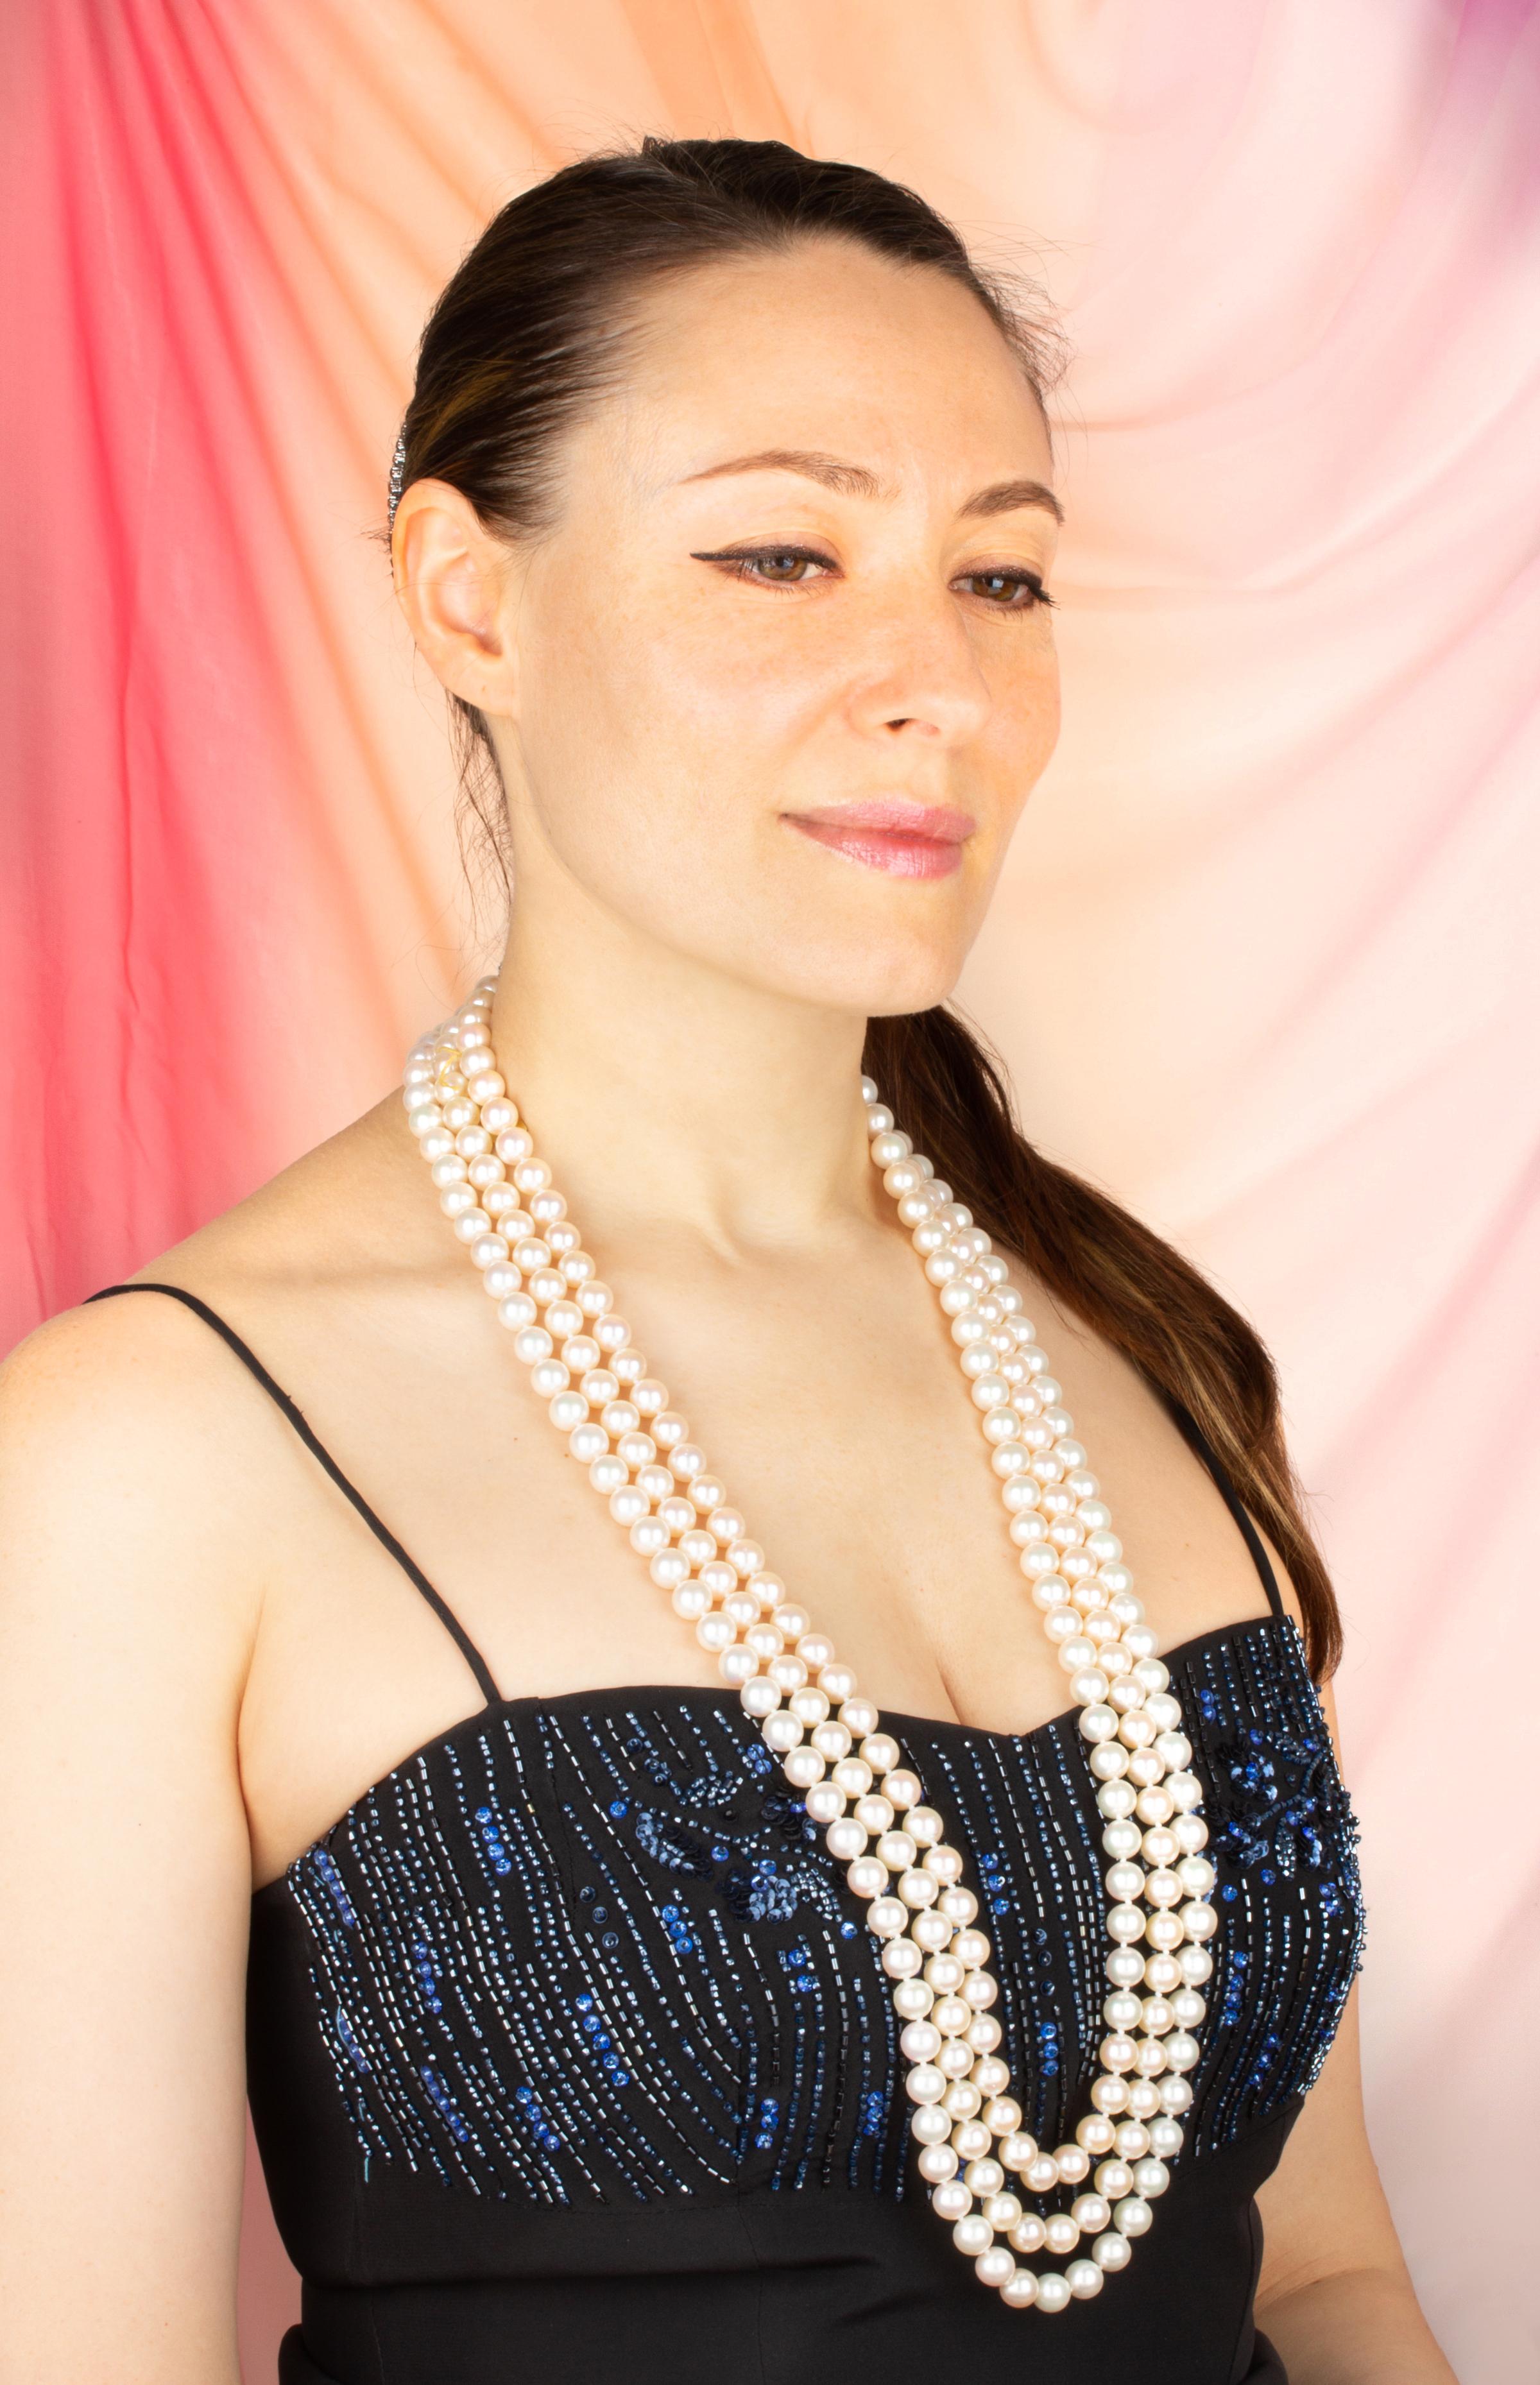 Die dreifache Perlenkette in Opernlänge besteht aus 6 originalen Strängen japanischer Perlen mit wunderschönem Perlmutt, Glanz und Schillern. Die Perlen sind homogen und messen 10/9,5 mm im Durchmesser und wurden aus Akoya-Muscheln gewonnen. Die 3